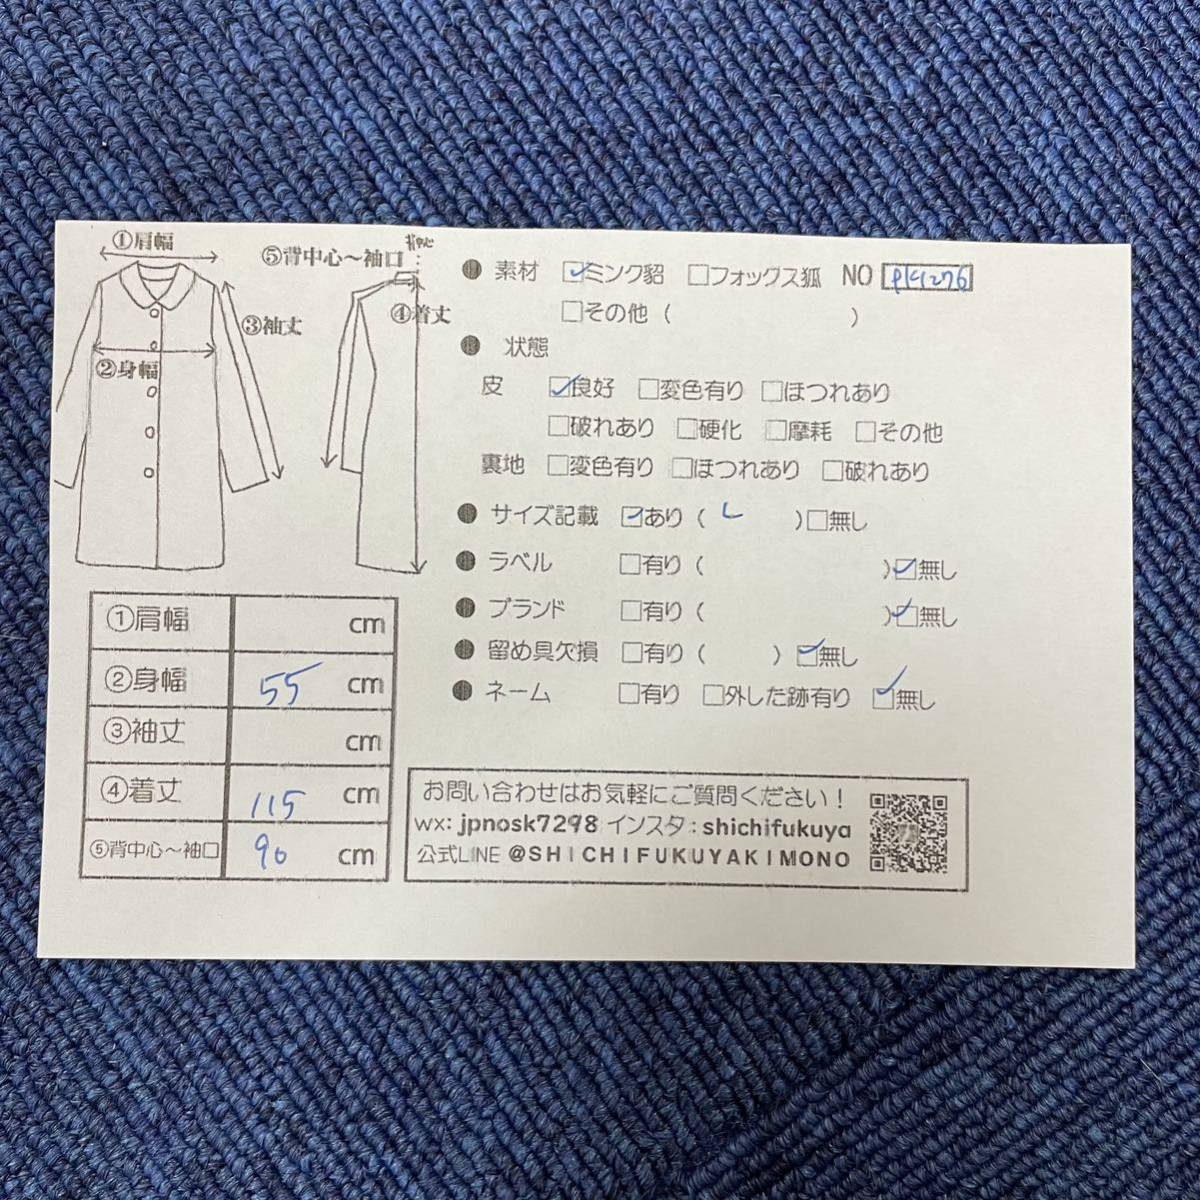 【七福】fk1276 紳士コート メンズコート ロングコート デザインコート ブラックミンク シェアードミンク 貂皮 mink 身丈 約 115cm_画像10